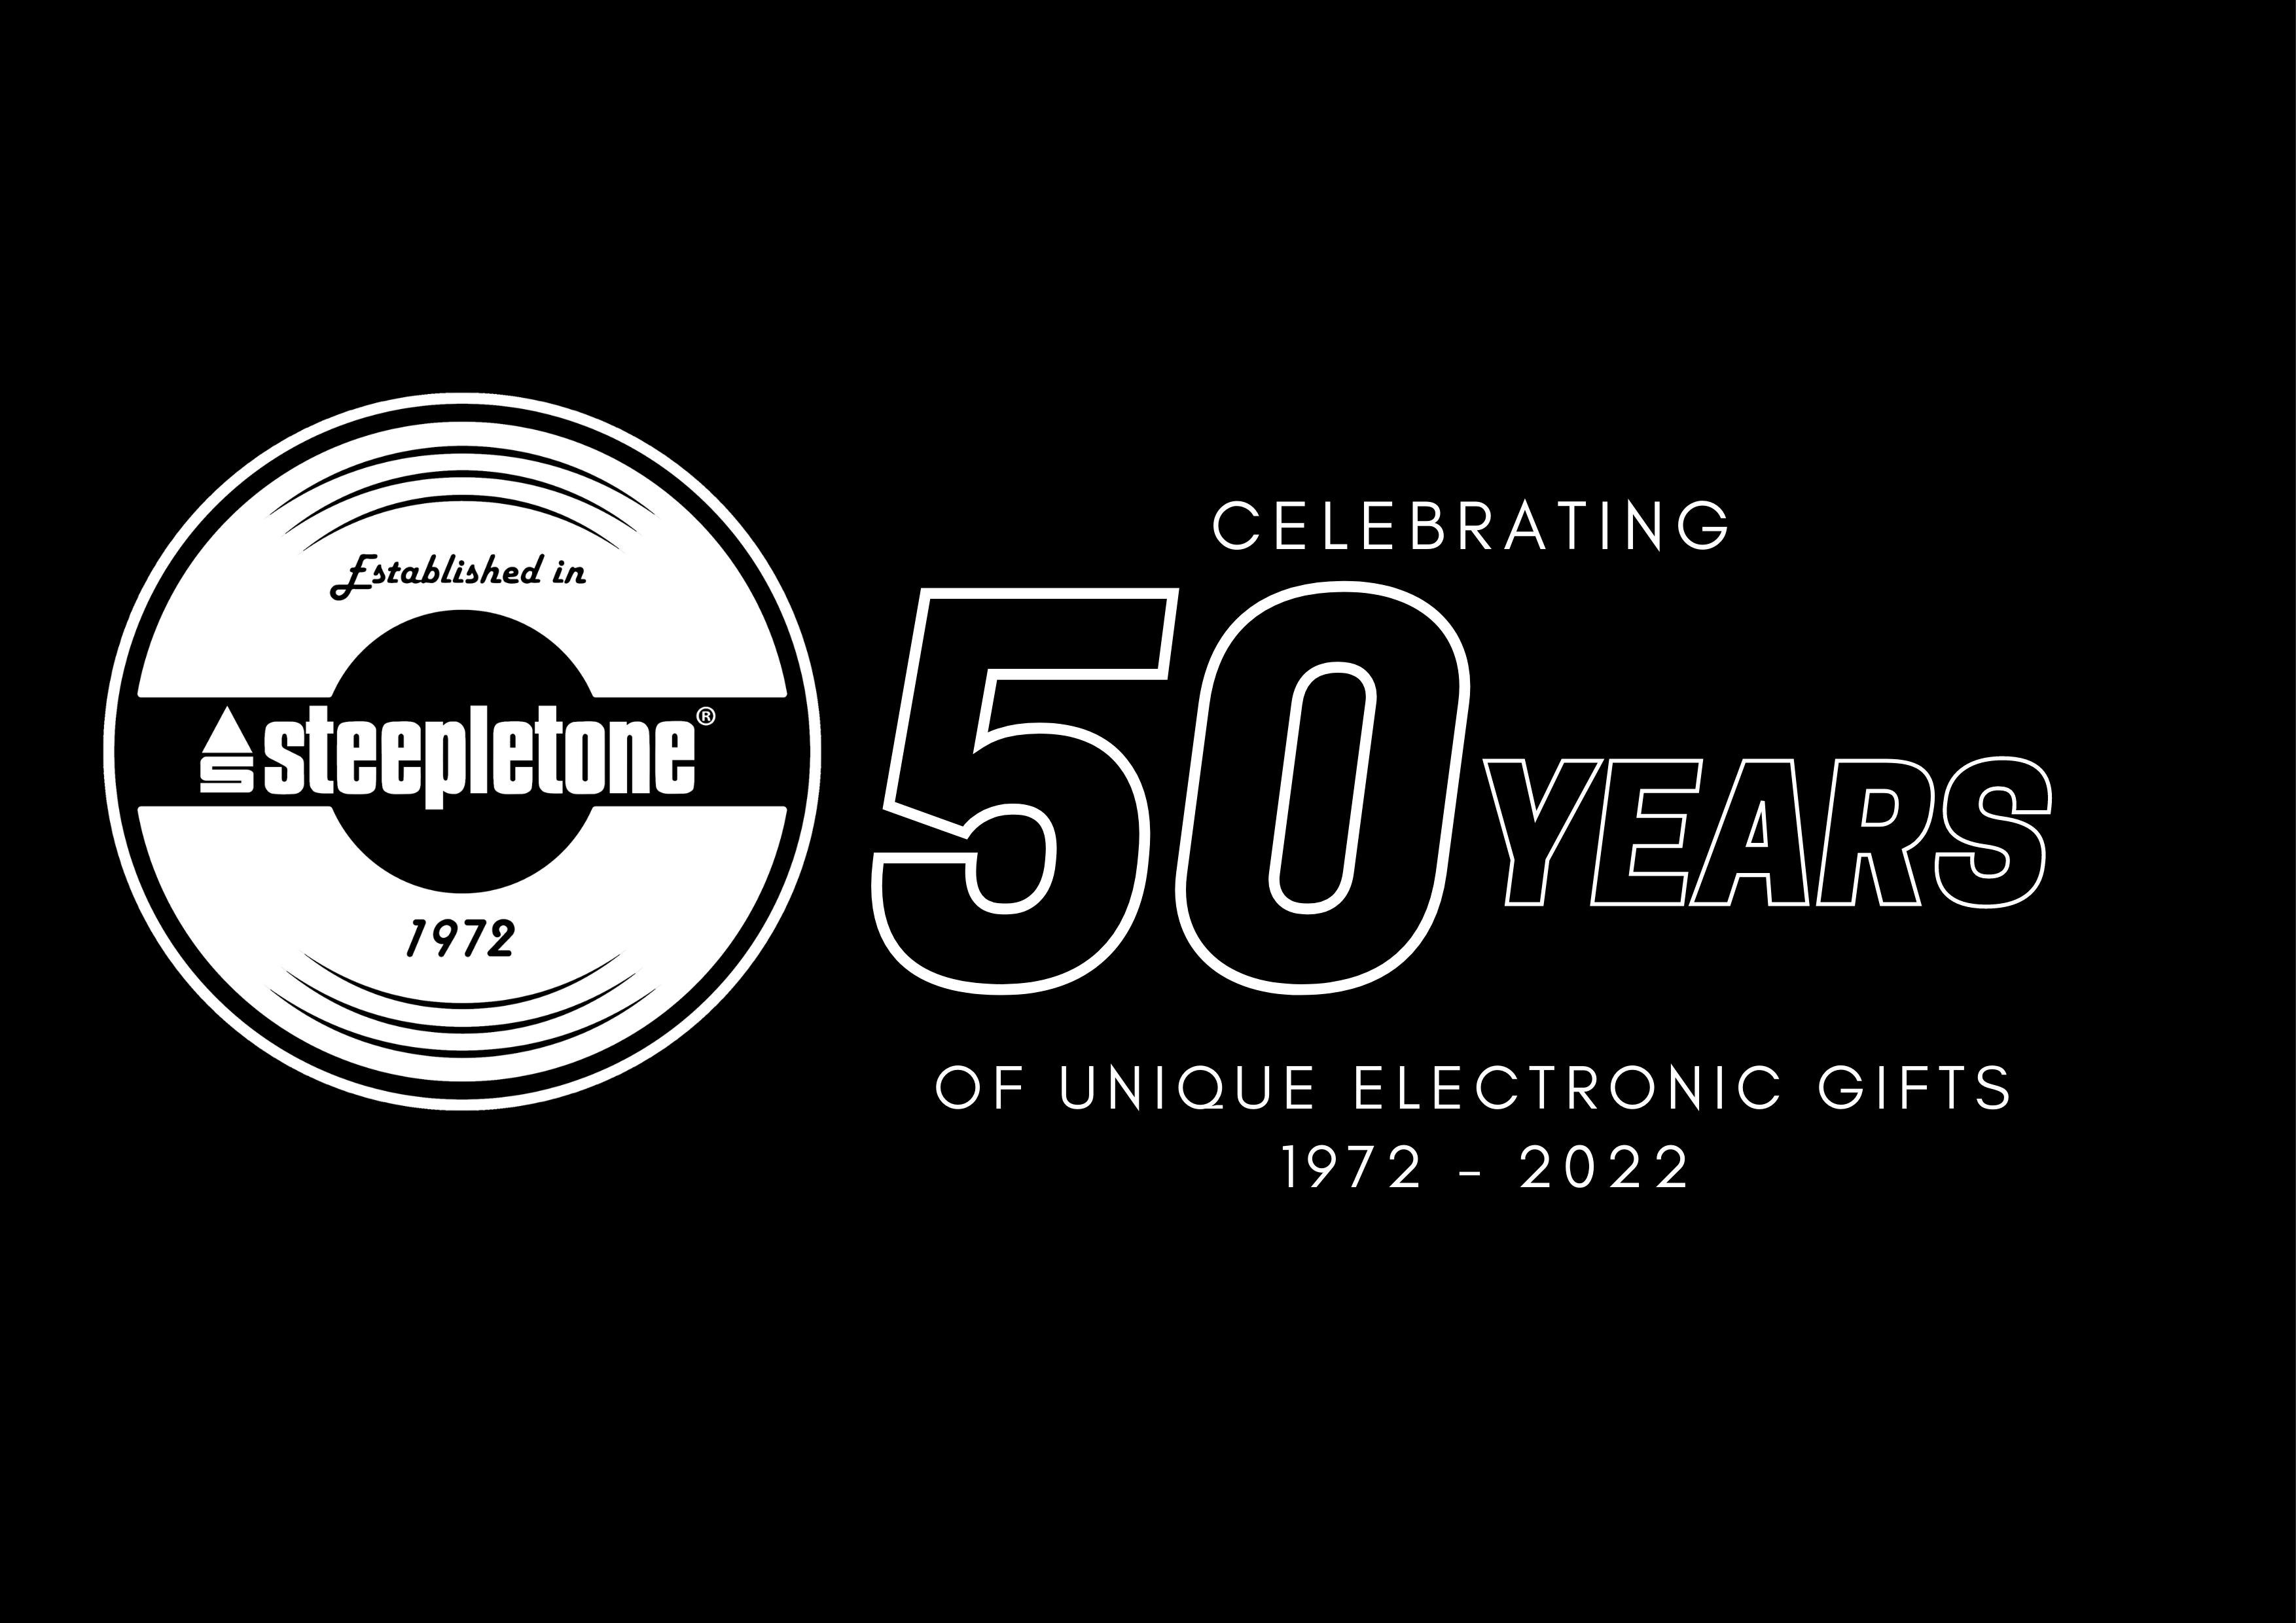 Steepletone UK Ltd